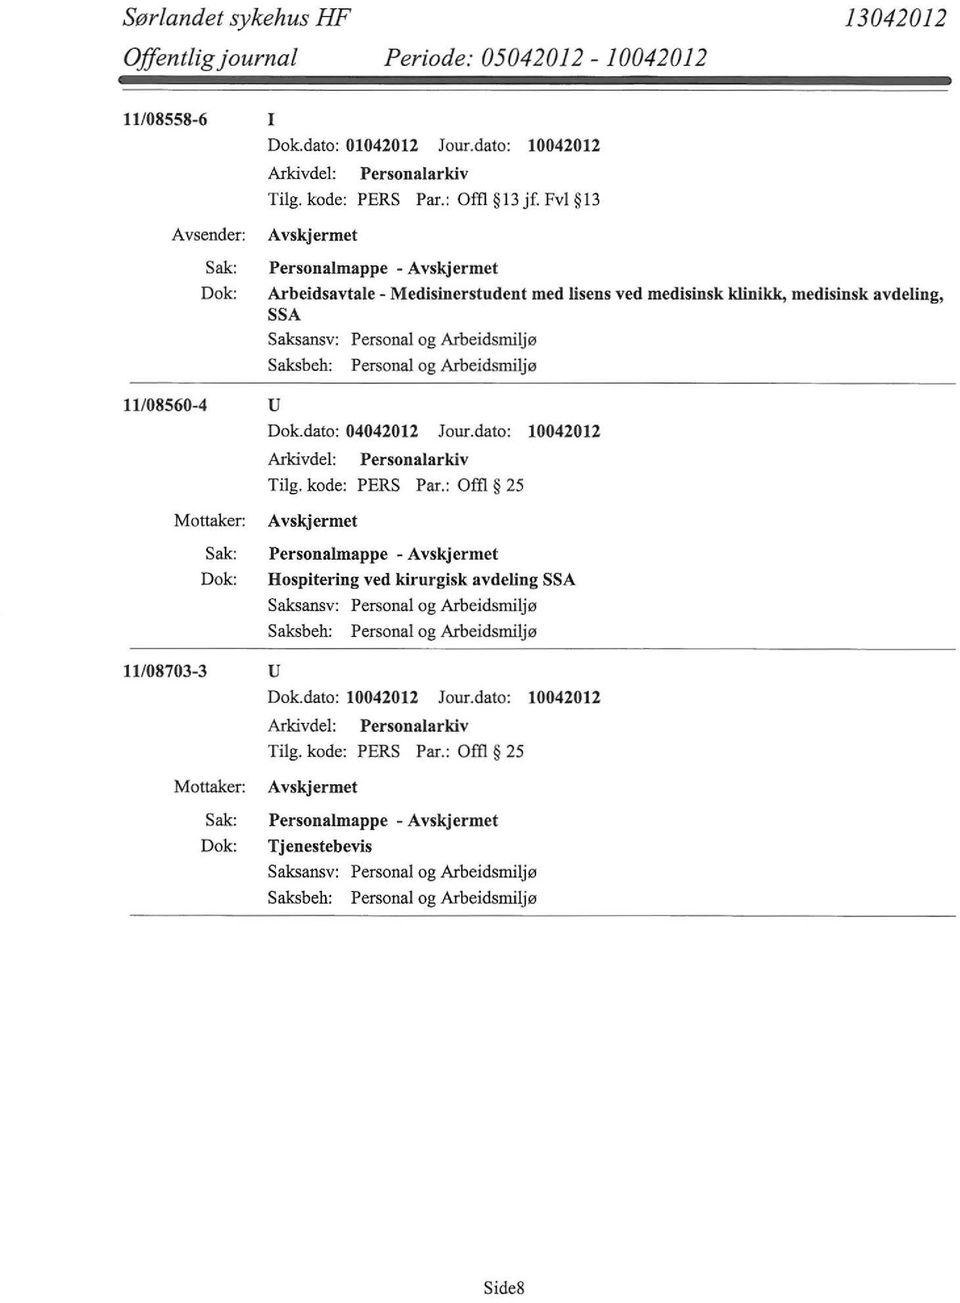 Fvl 13 Personalrnappe - Arbeidsavtale - Medisinerstudent med lisens ved medisinsk klinikk, medisinsk avdeling, SSA